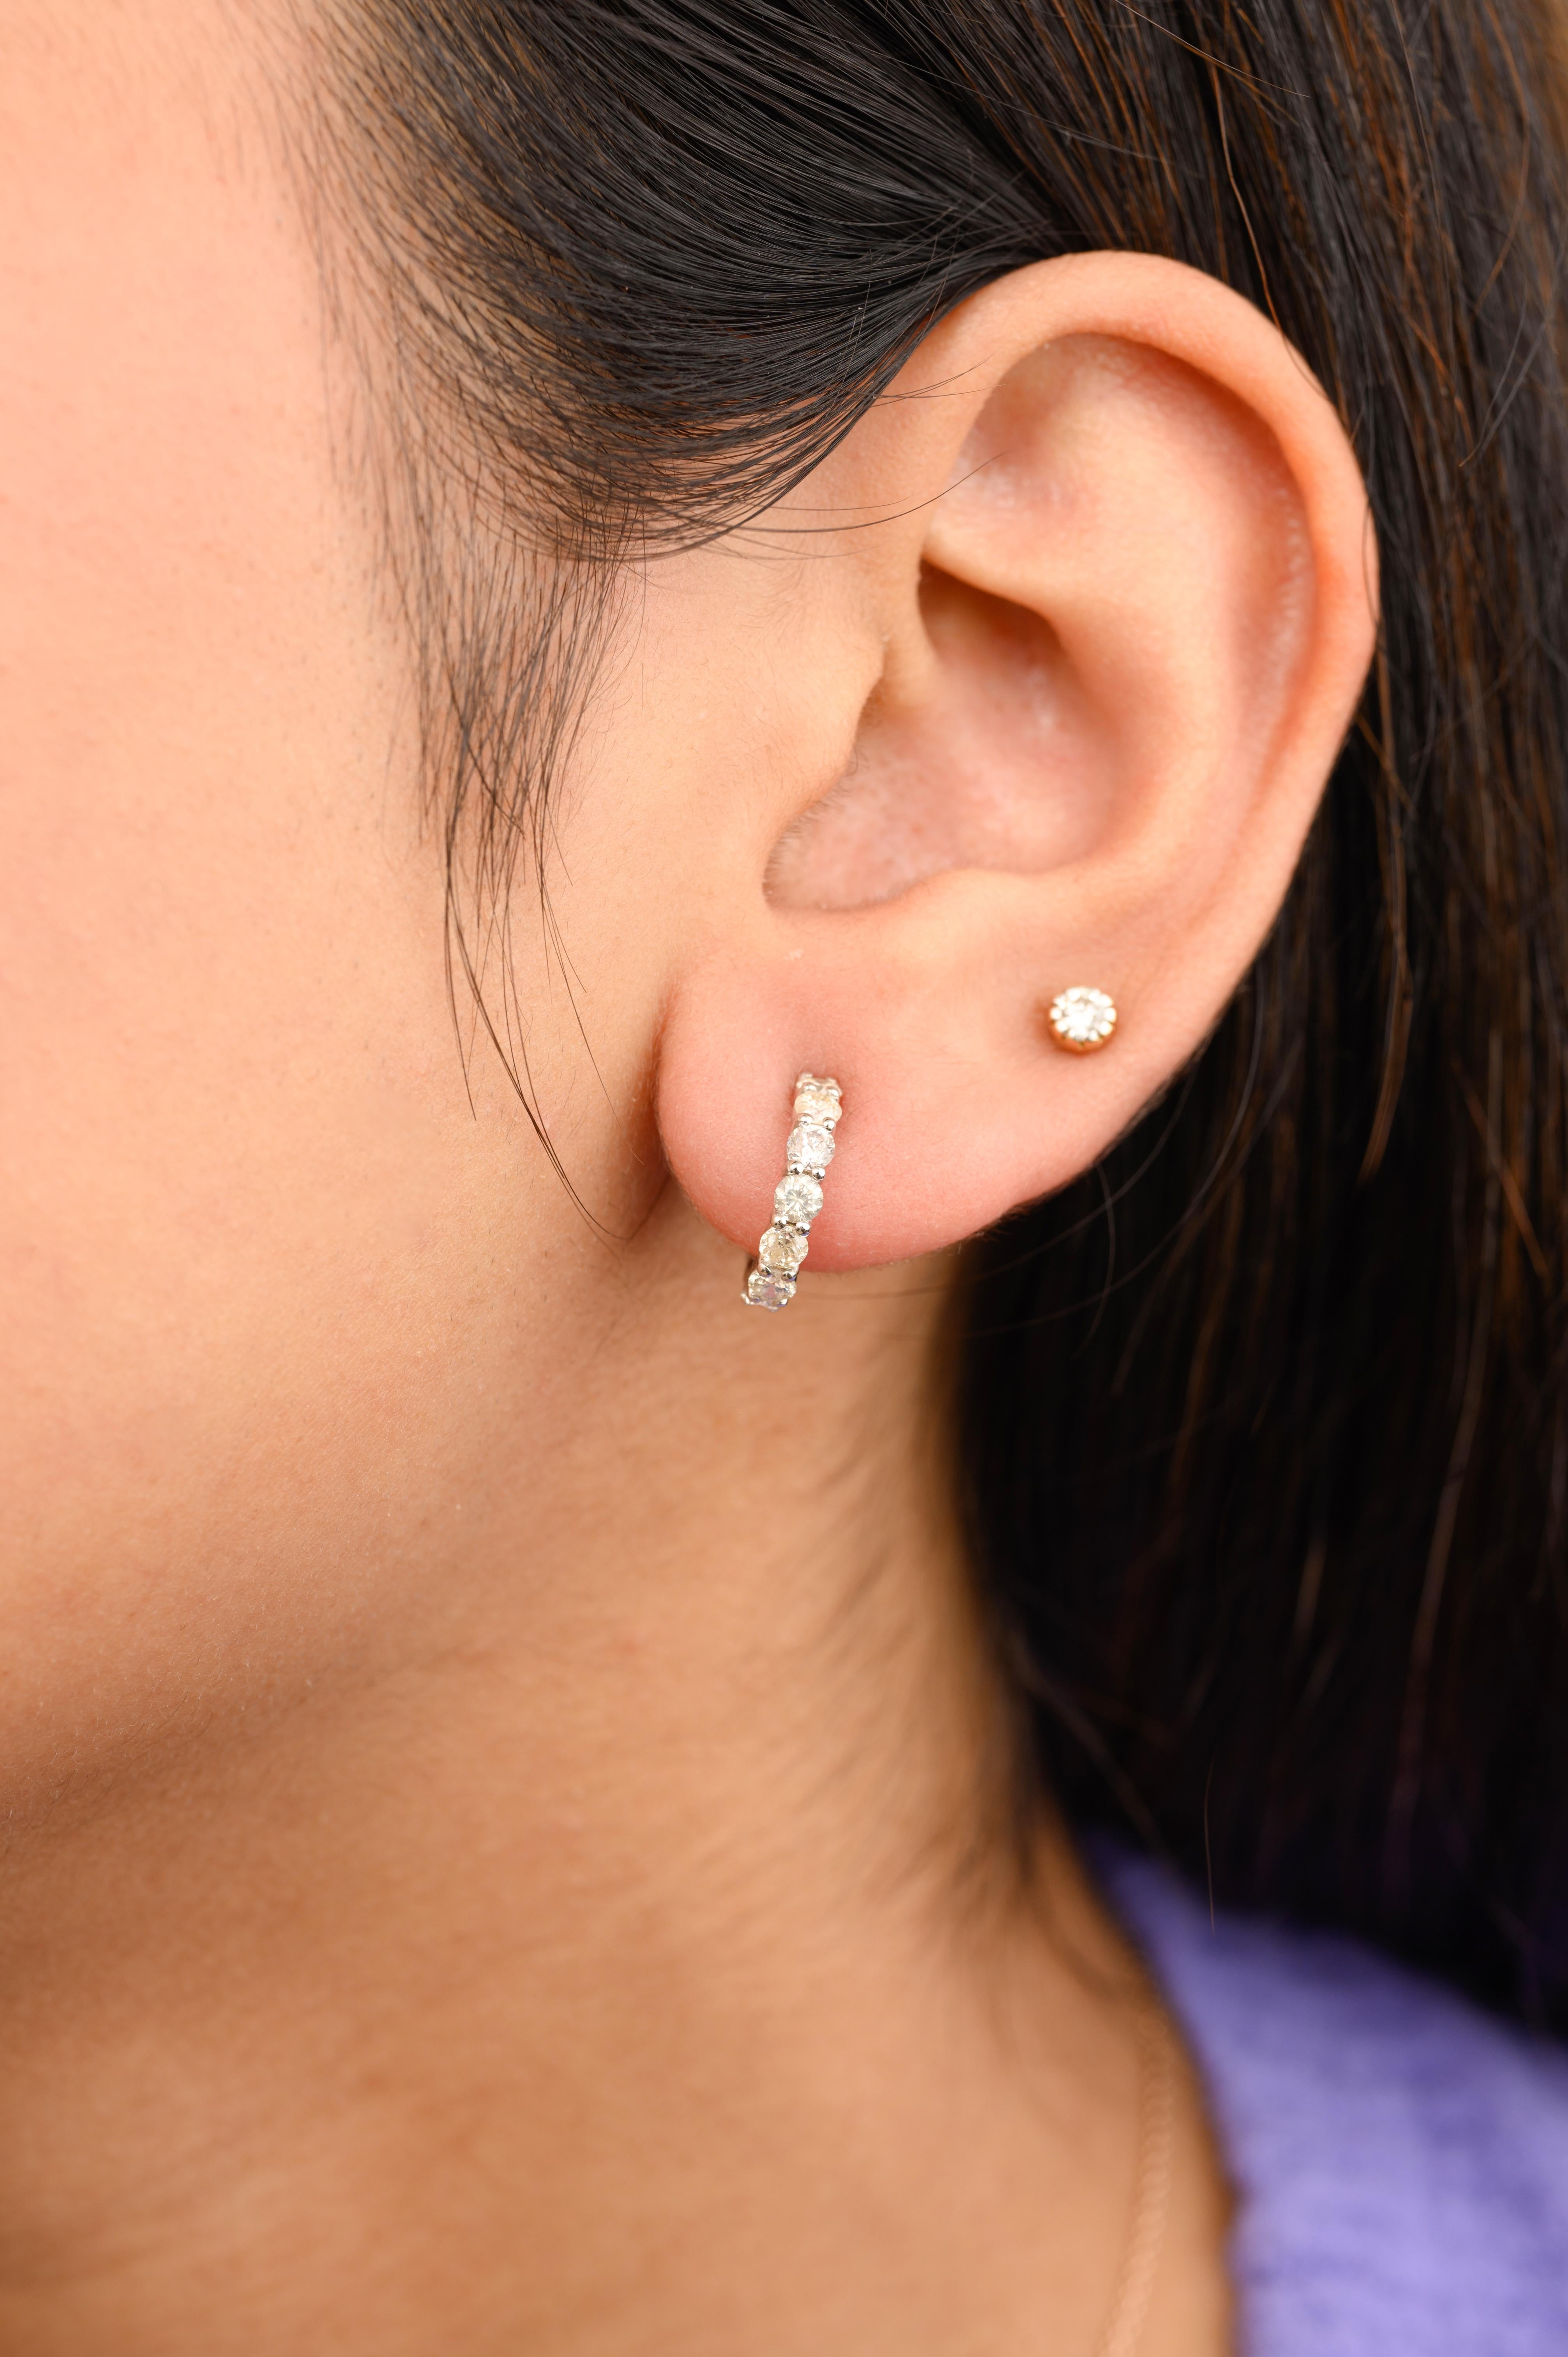 Les minuscules boucles d'oreilles en diamant naturel en or 18 carats vous permettront d'affirmer votre look. Vous aurez besoin de boucles d'oreilles pour affirmer votre look. Ces boucles d'oreilles créent un look étincelant et luxueux avec des